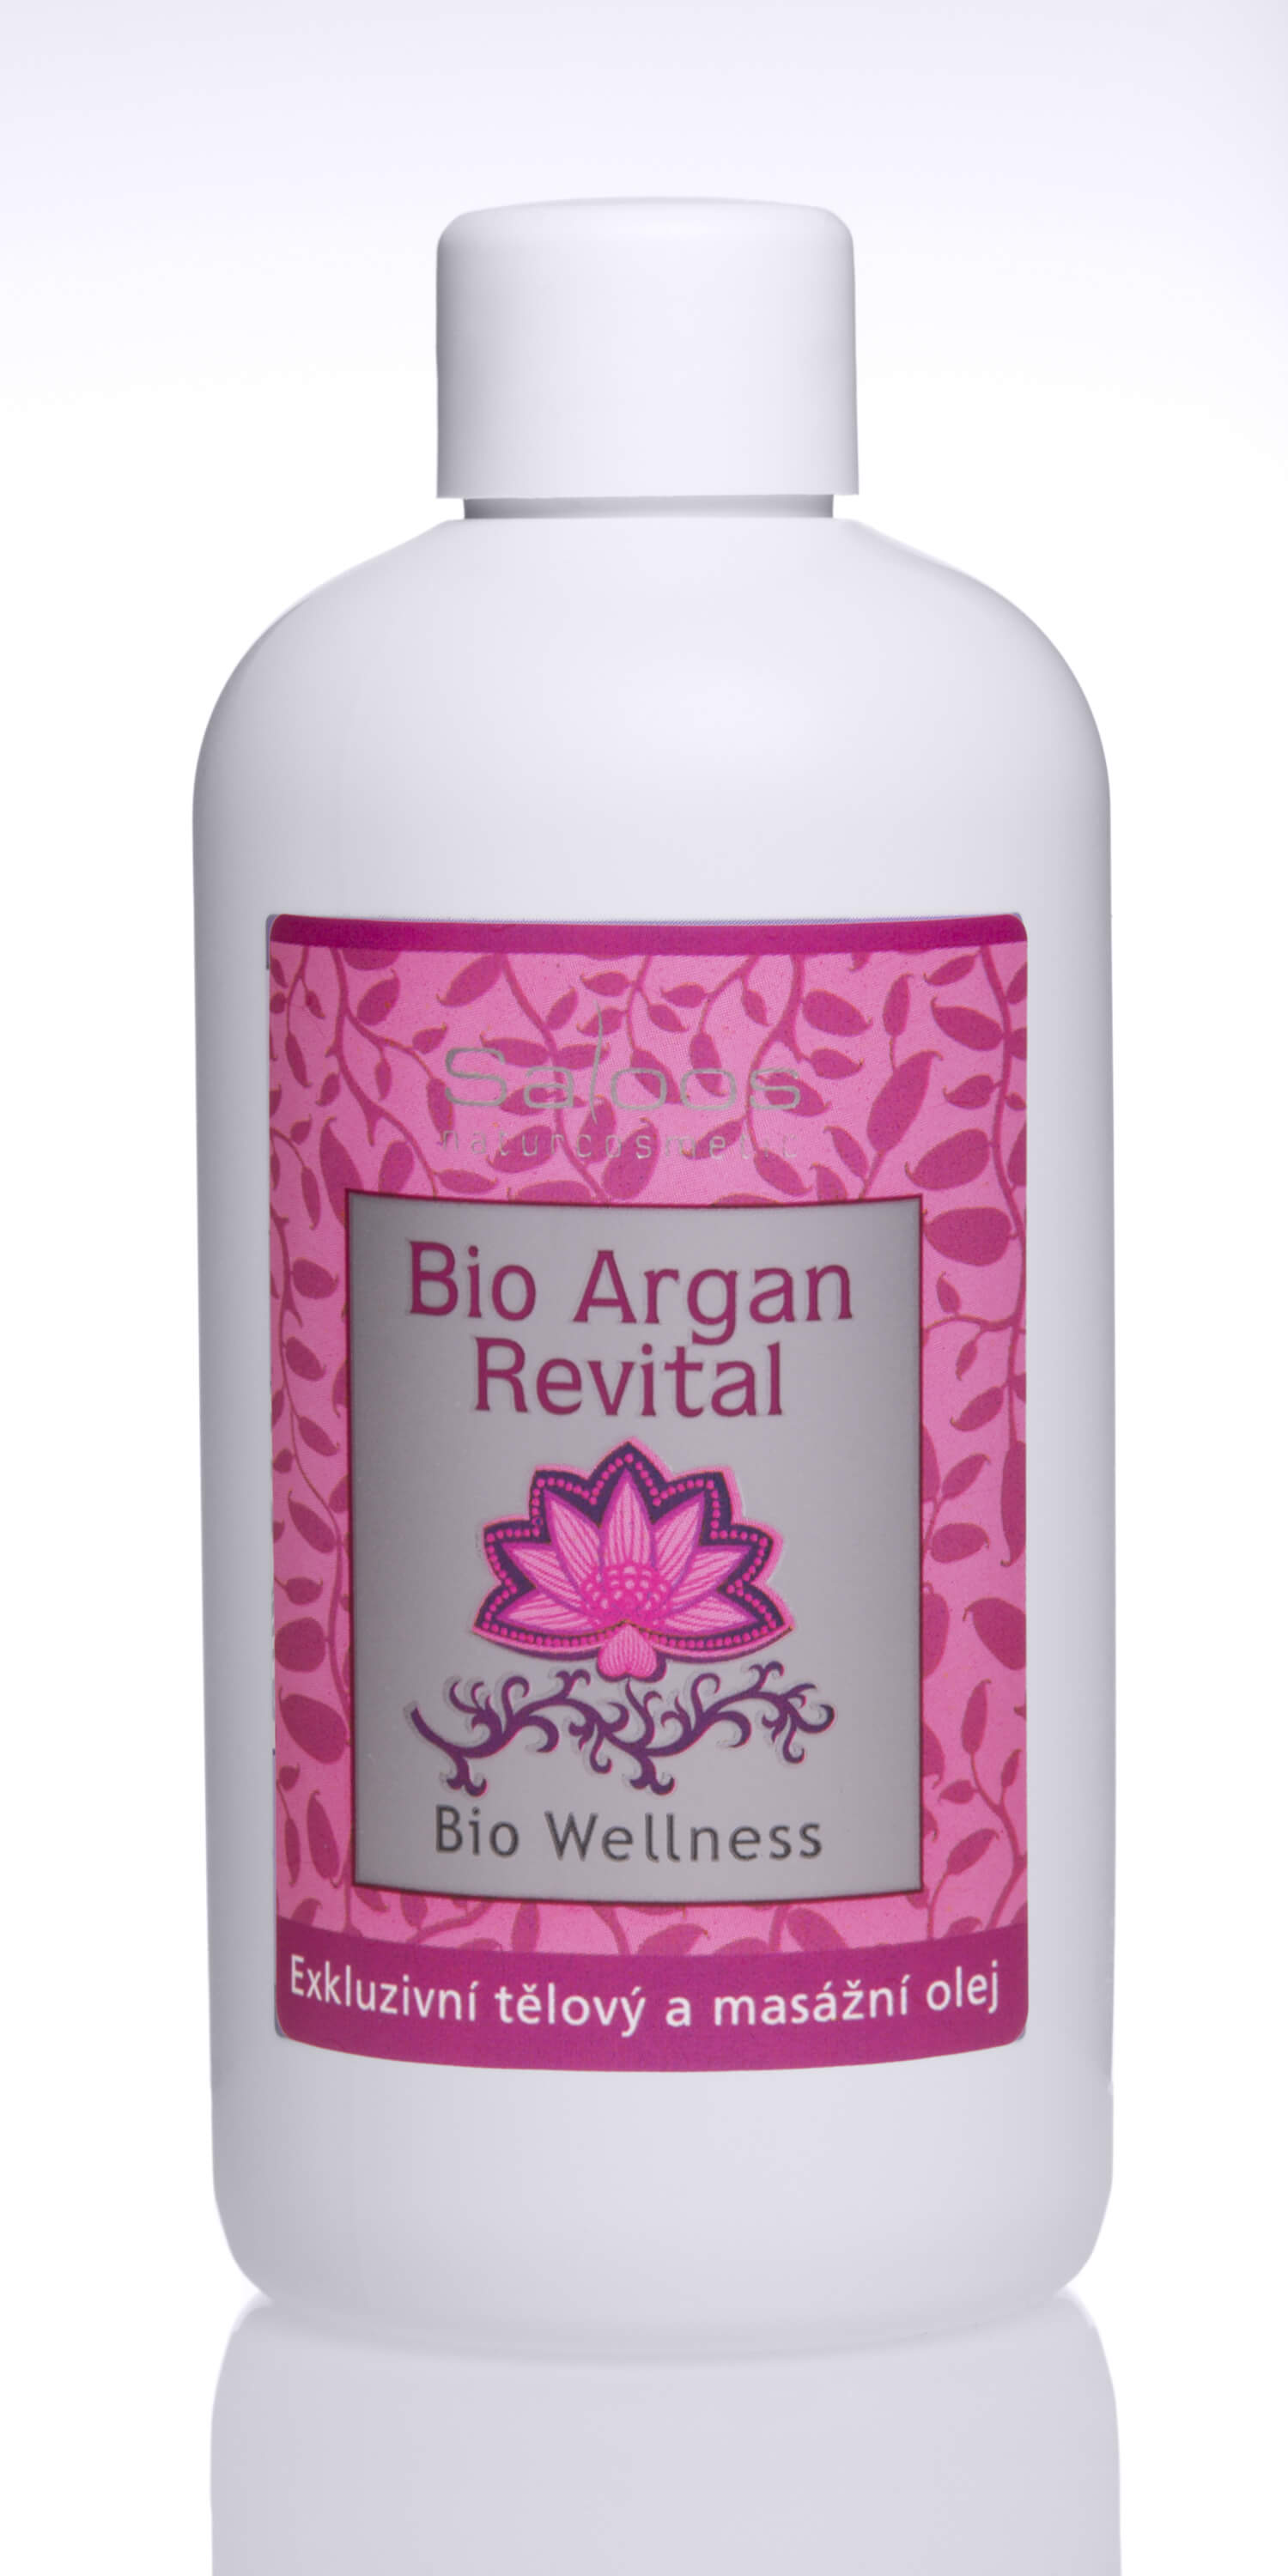 Zobrazit detail výrobku Saloos Bio Wellness exkluzivní tělový a masážní olej - Argan Revital 250 ml + 2 měsíce na vrácení zboží